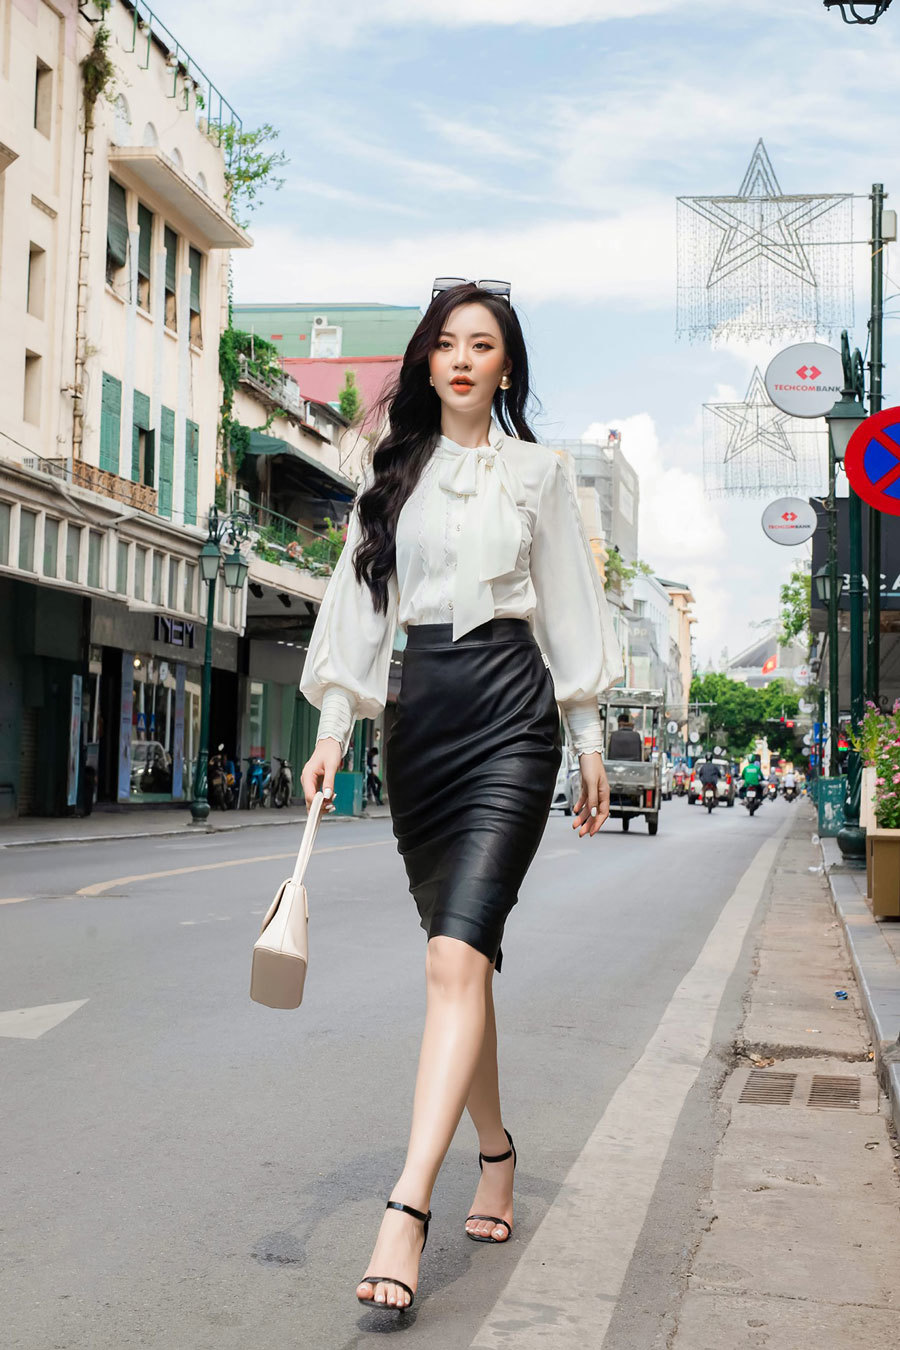 Cuộc sống hiện tại của người đẹp thi hoa hậu nhiều nhất Việt Nam - Ảnh 11.